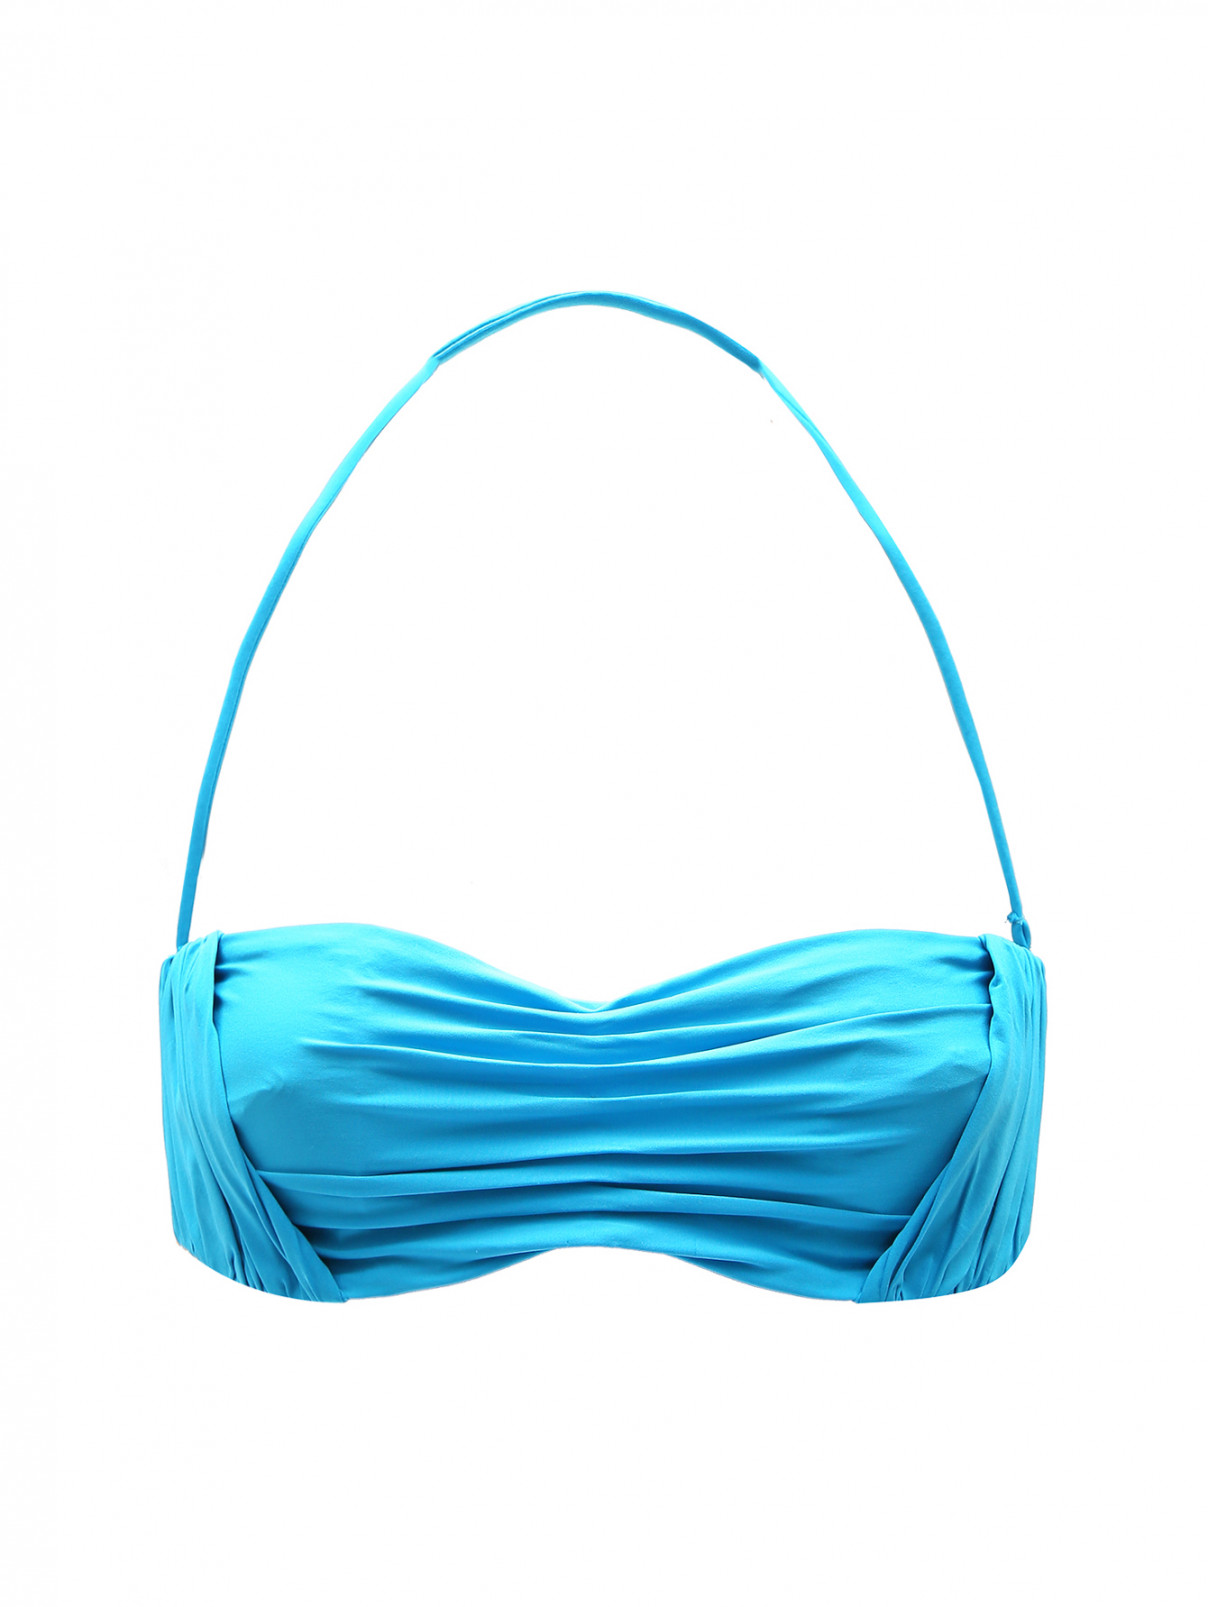 Верх от купальника с драпировкой La Perla  –  Общий вид  – Цвет:  Синий